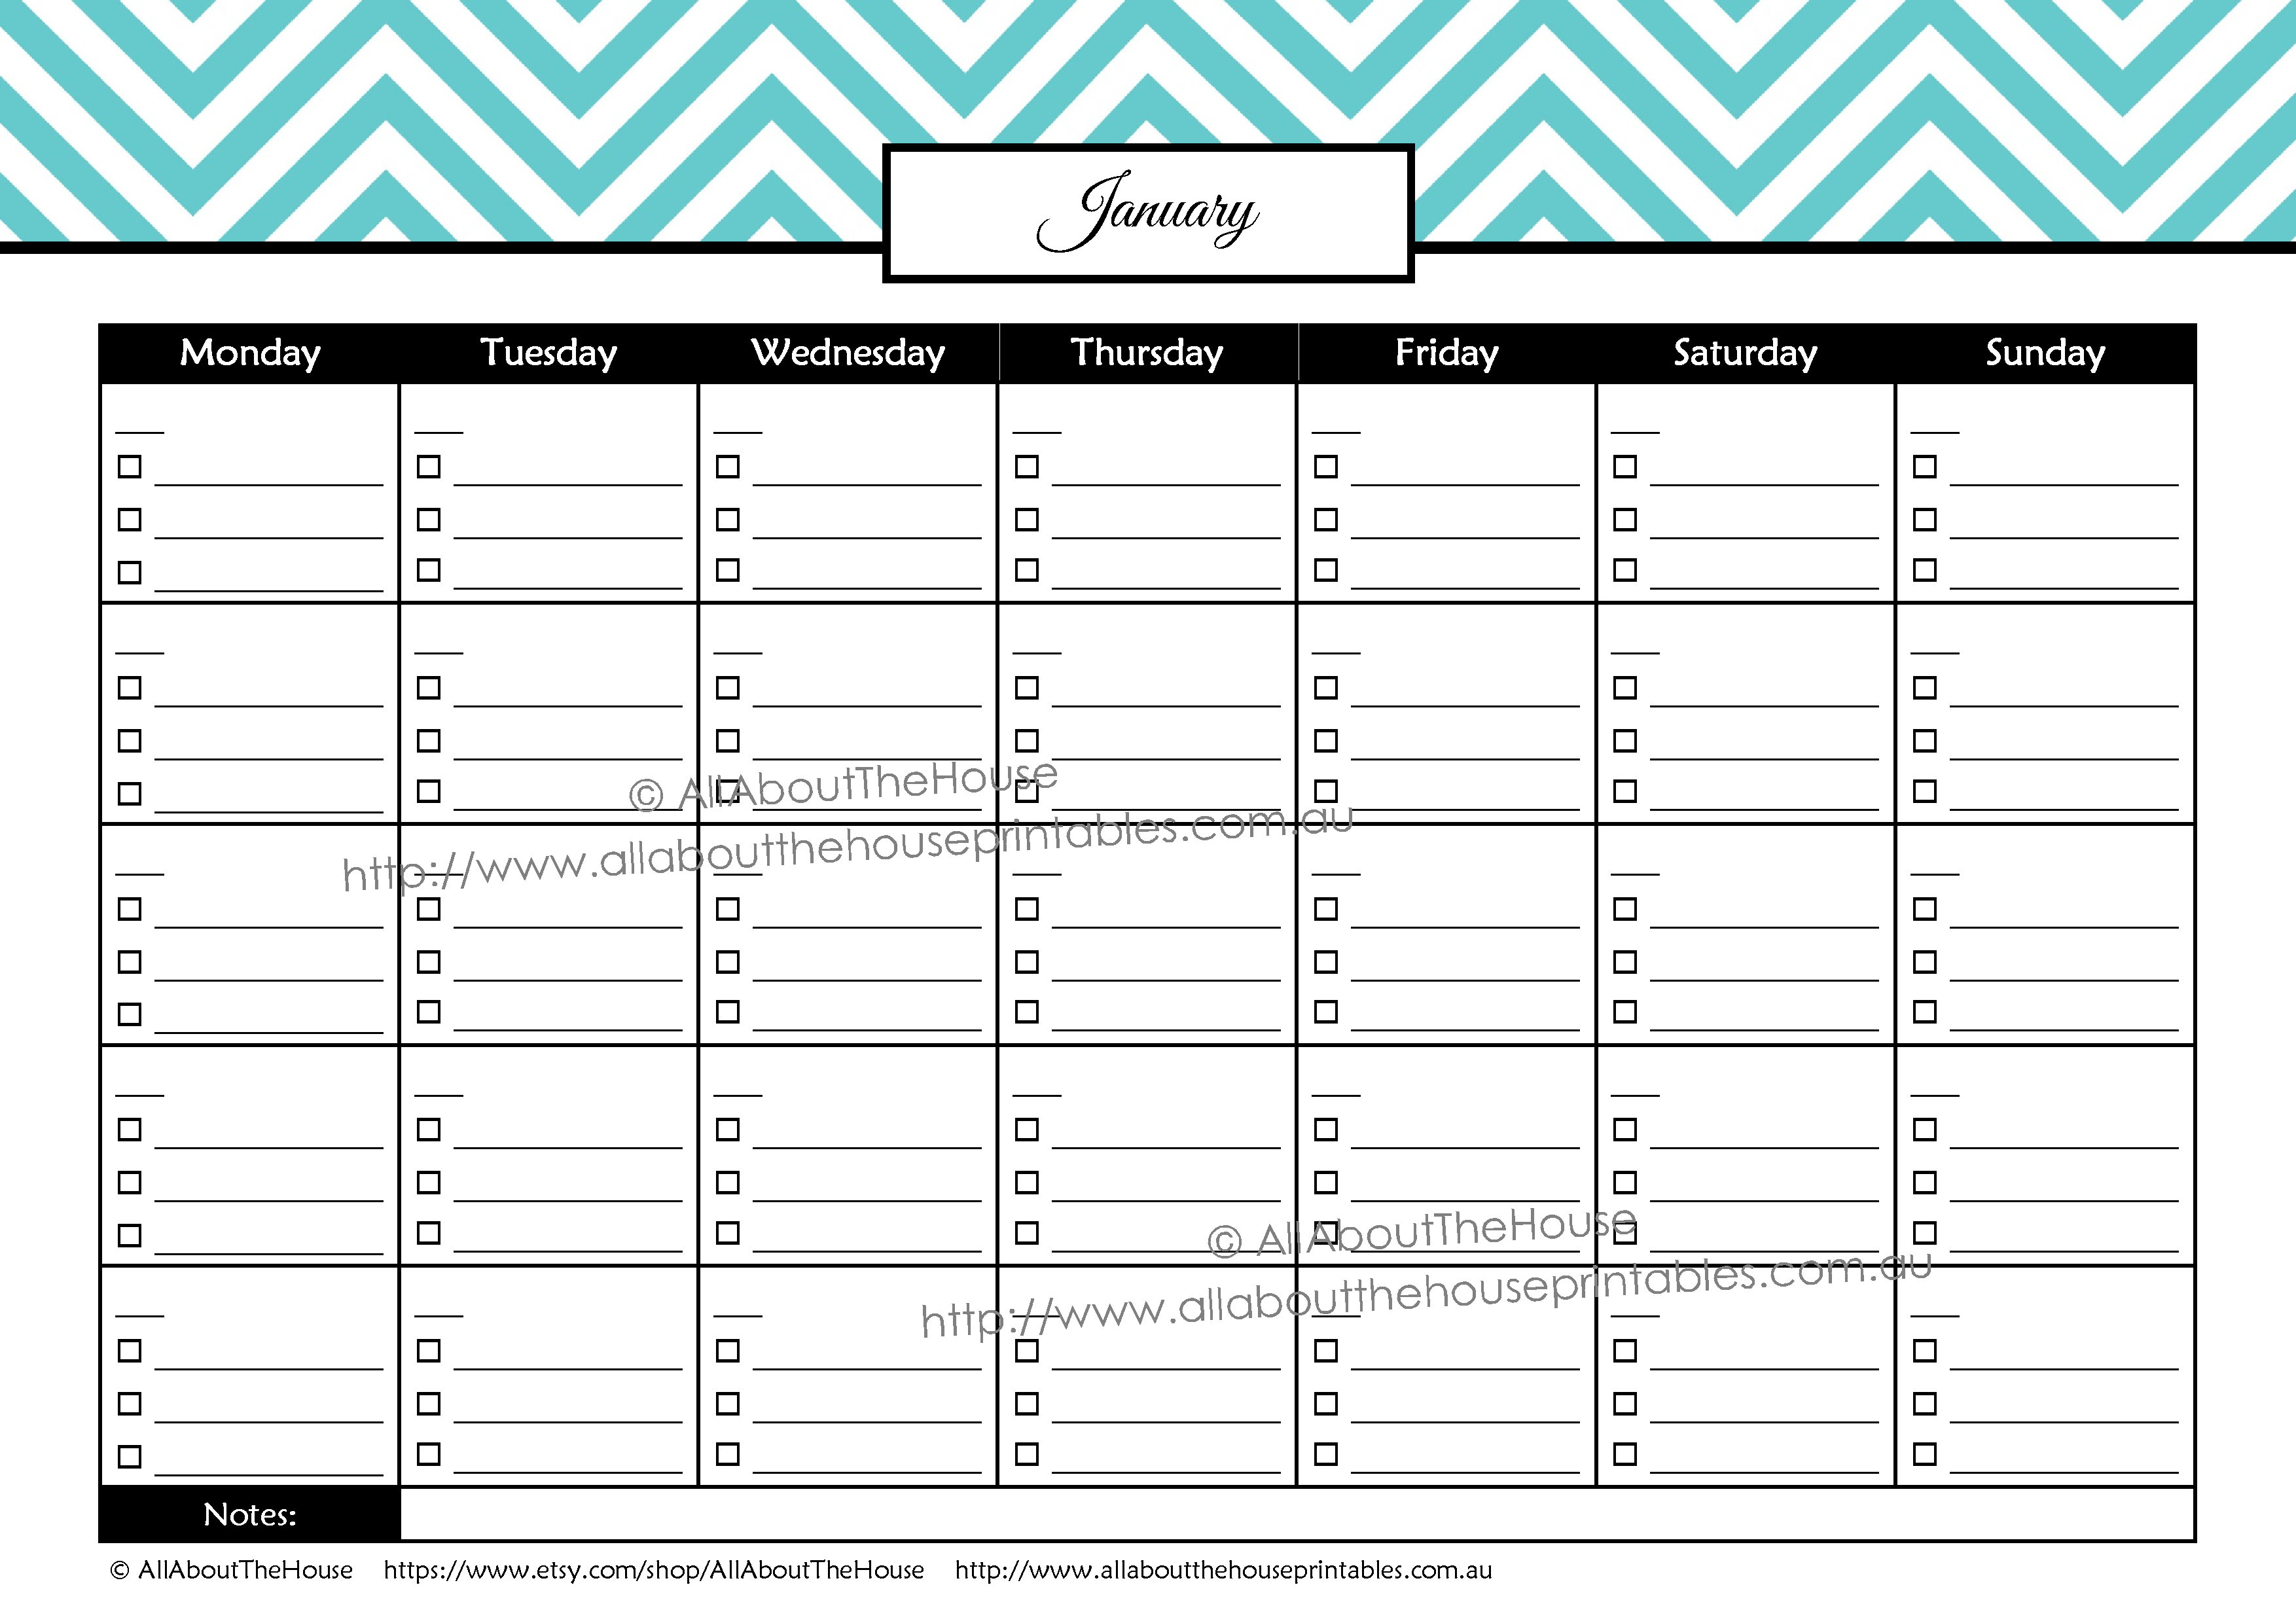 026 Template Ideas Paid Bill Payment Calendar Checklist intended for Bill Pay Calendar Organizer